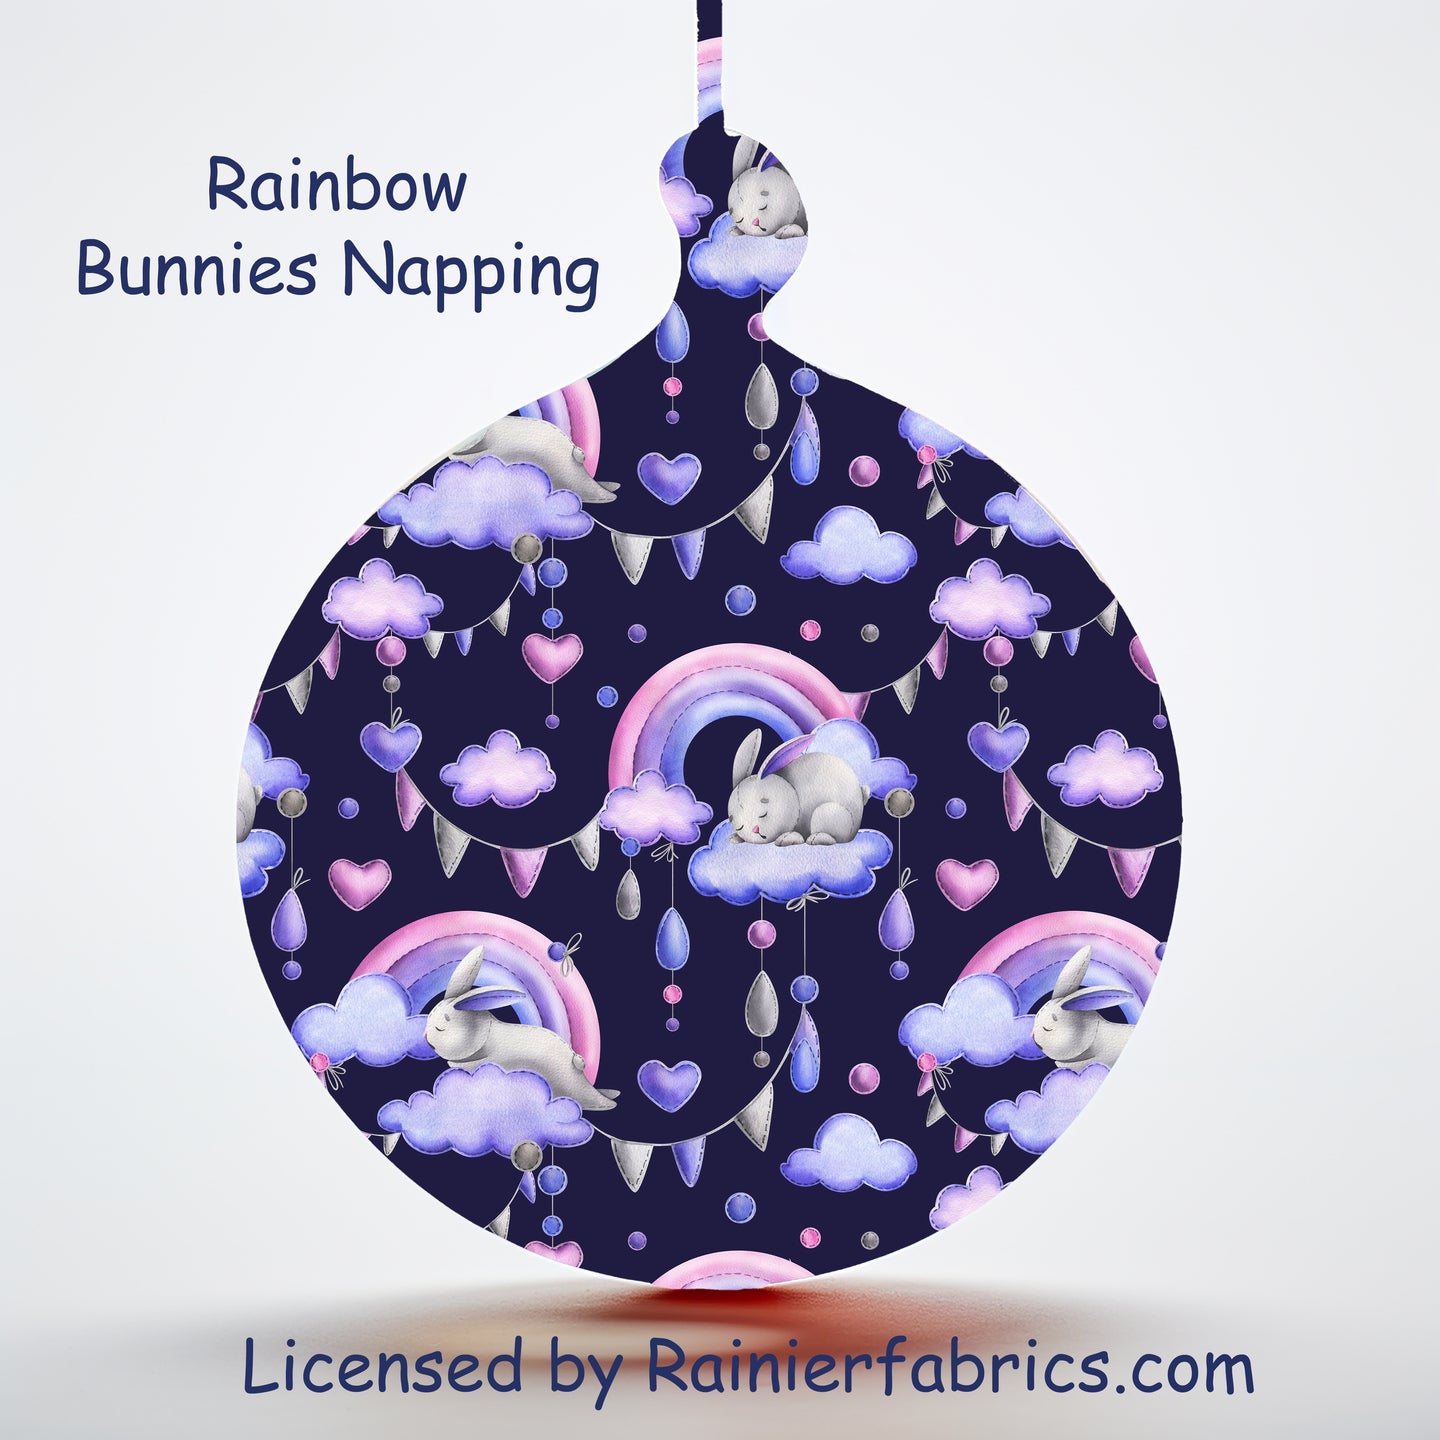 Rainbow Bunnies Napping